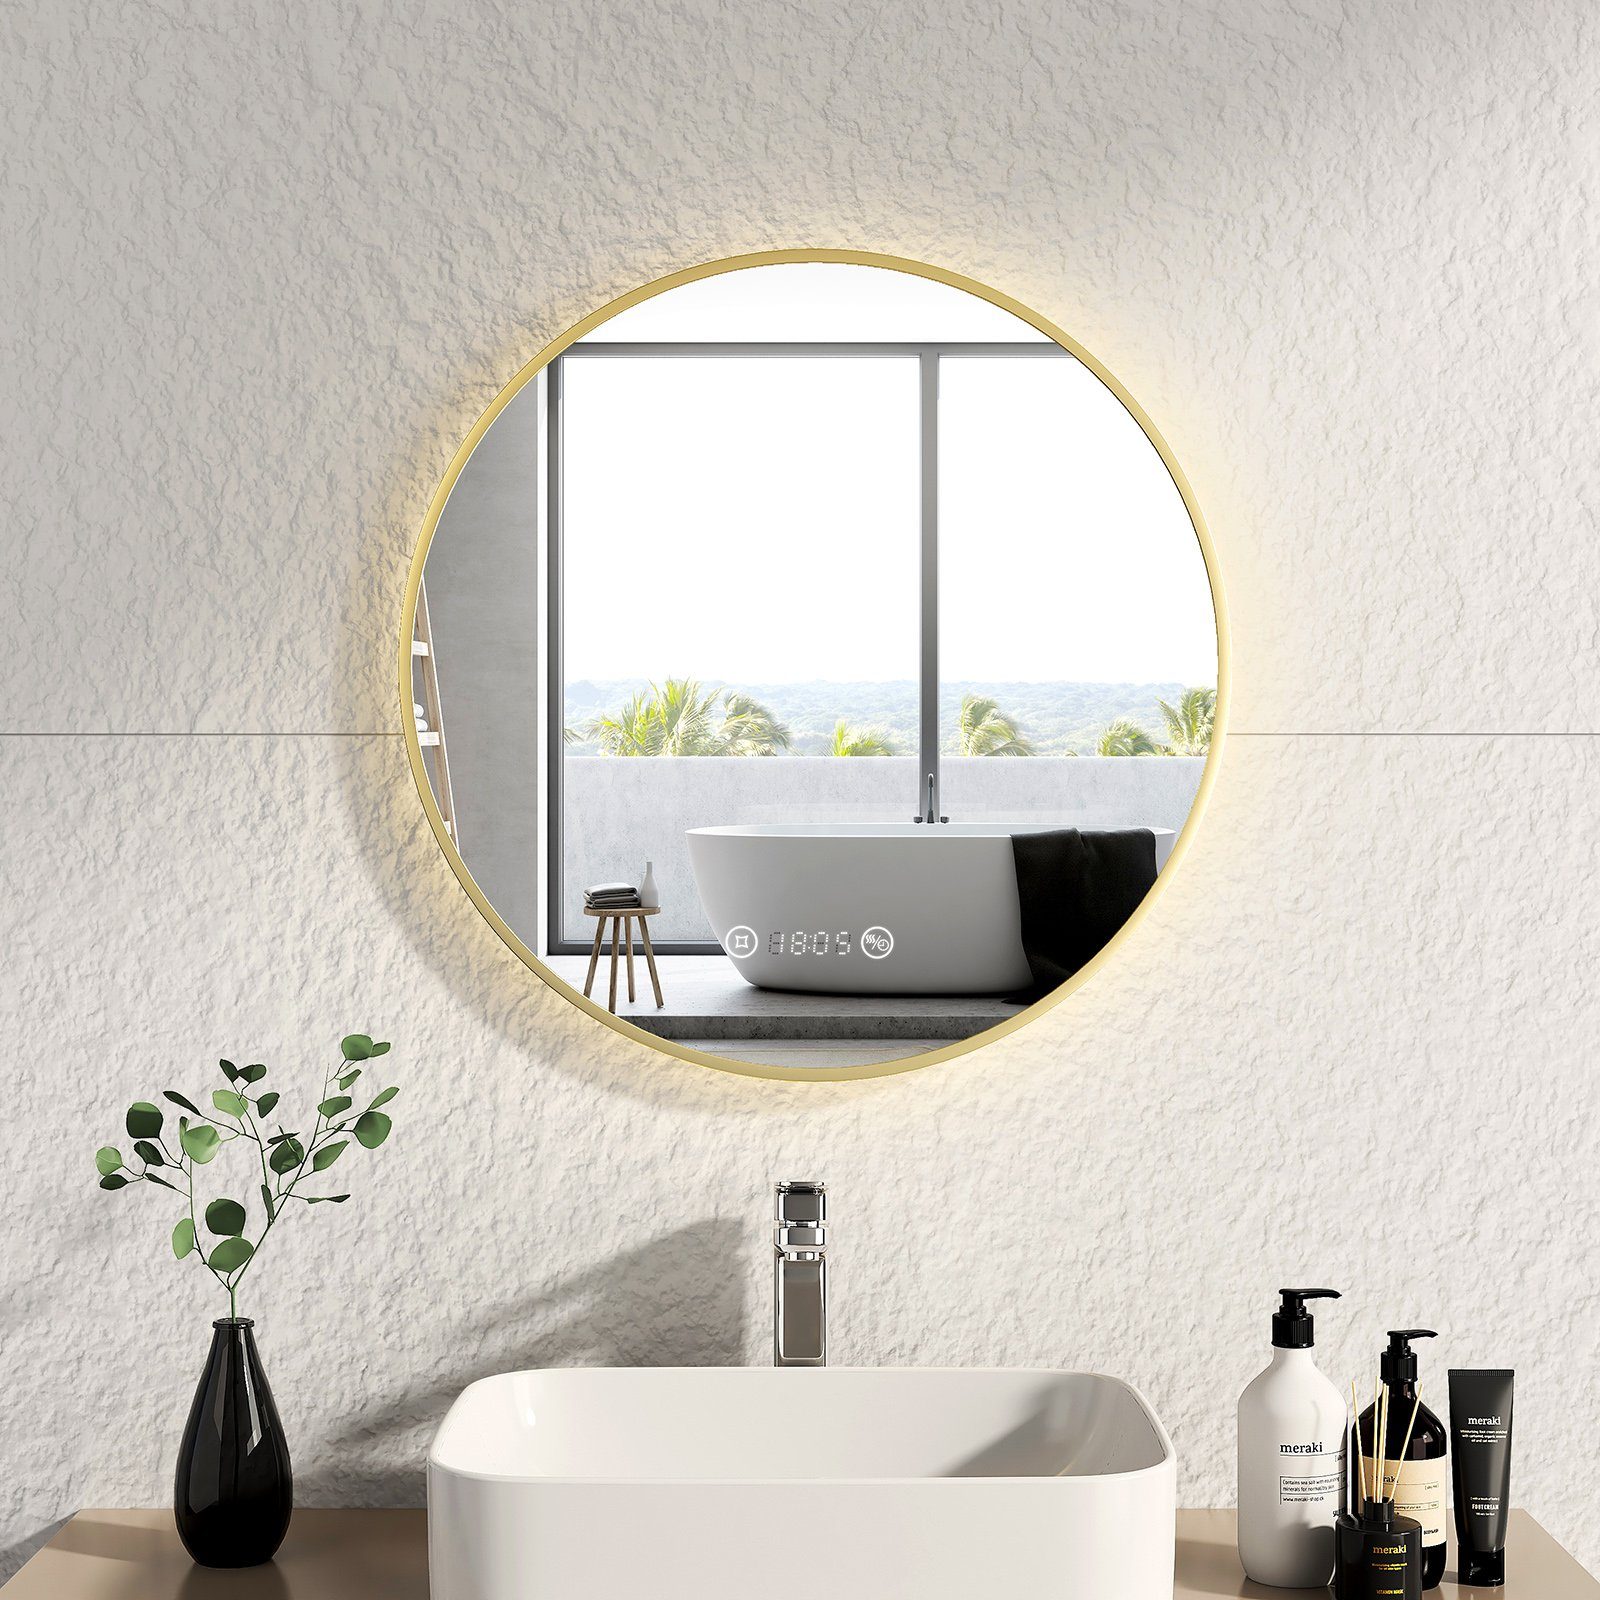 EMKE Badspiegel EMKE LED Badspiegel Rund Spiegel mit Beleuchtung Gold, mit Touch, Antibeschlage, Uhr, Temperatur, Dimmbar, Memory-Funktion